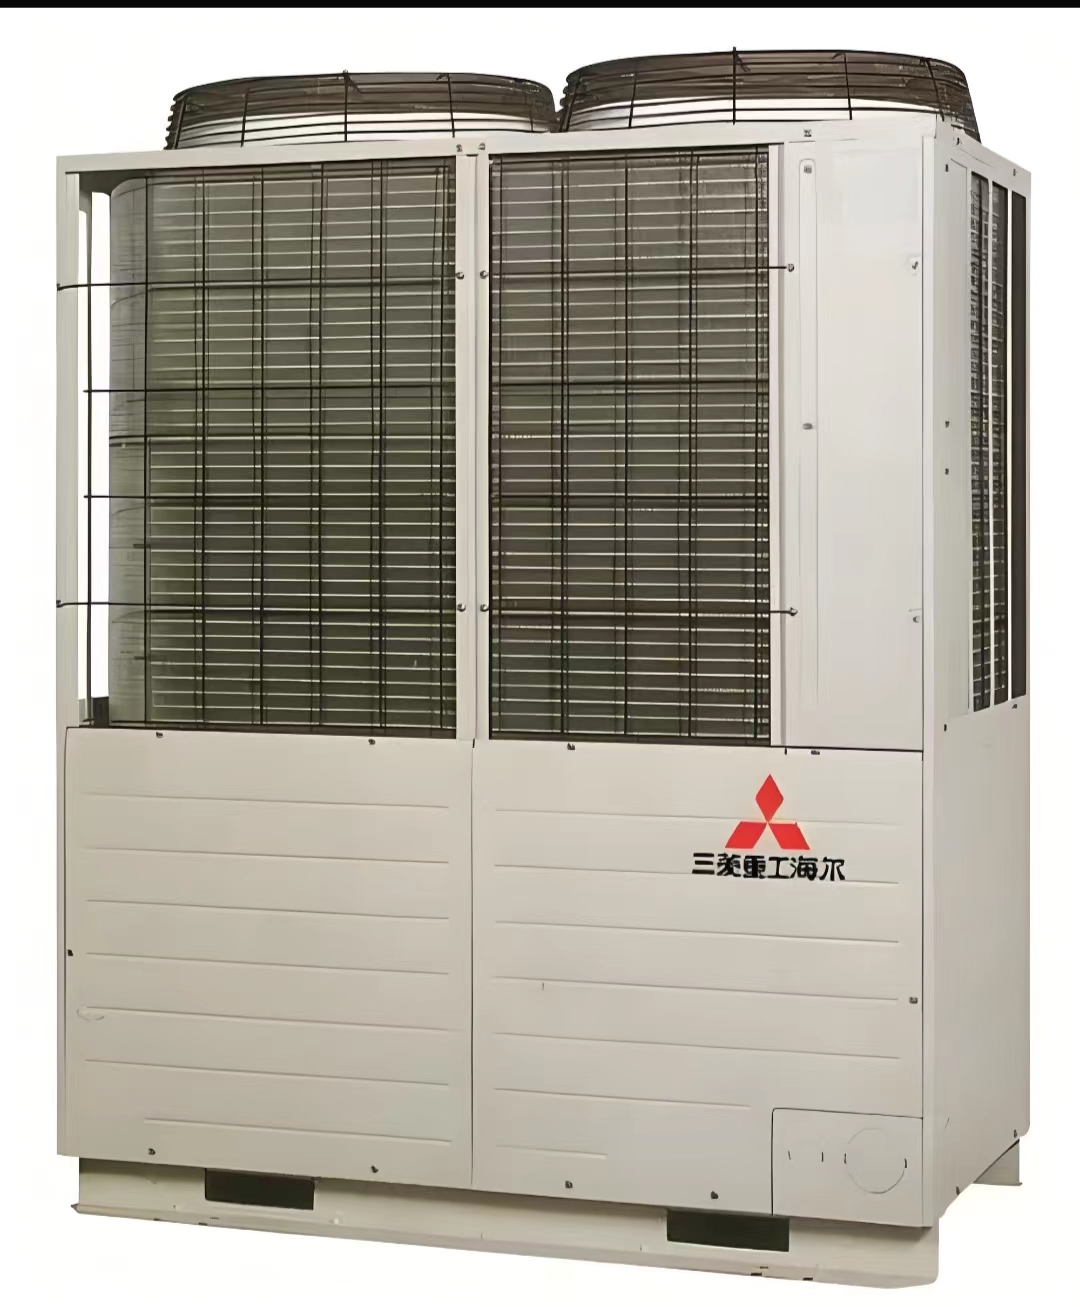 三菱重工Haier风冷模块机 风冷热泵机组 中央空调 销售安装设计 厂家价格 制冷设备环保节能制冷剂